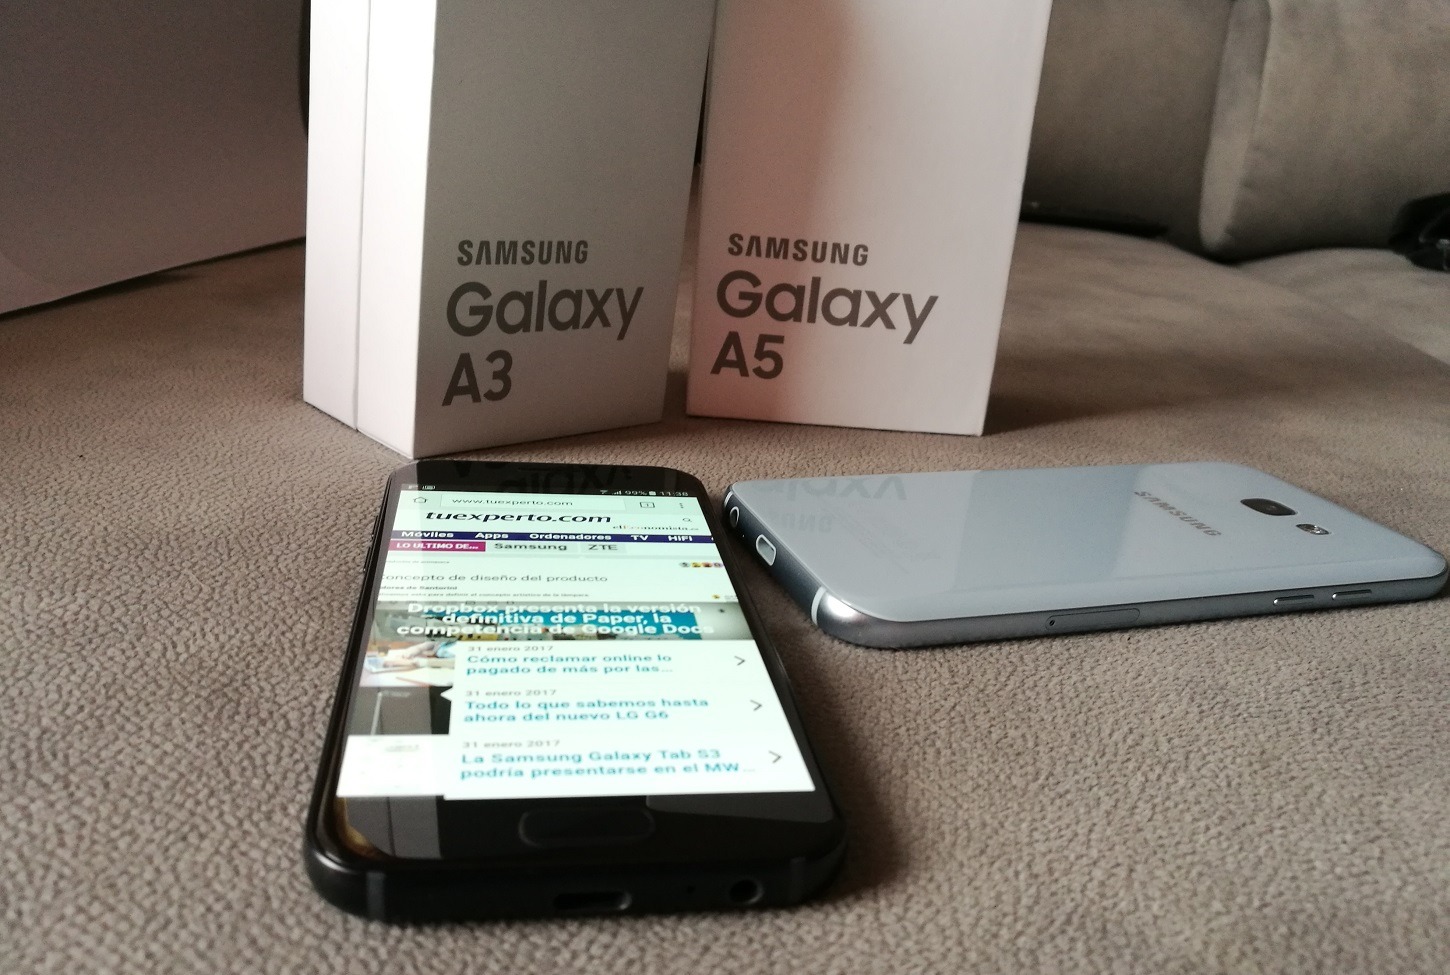 Samsung Galaxy A3 2017 vs Samsung Galaxy A5 2017